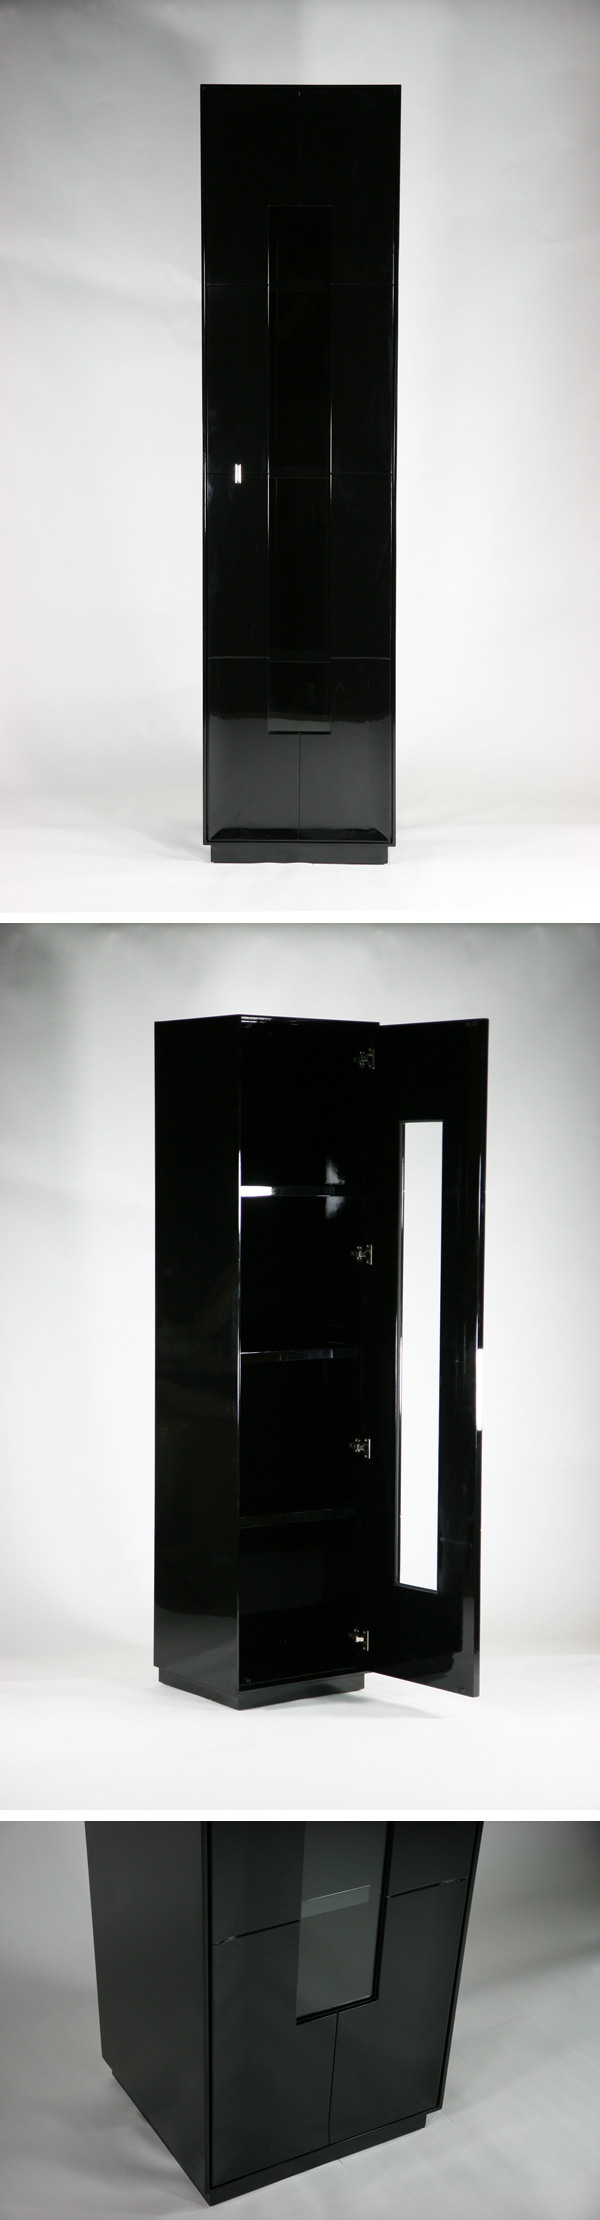 得価正規店送料無料 新品 大型 1door キャビネット コレクションボード 飾り棚 完成品 ブラック 飾り棚